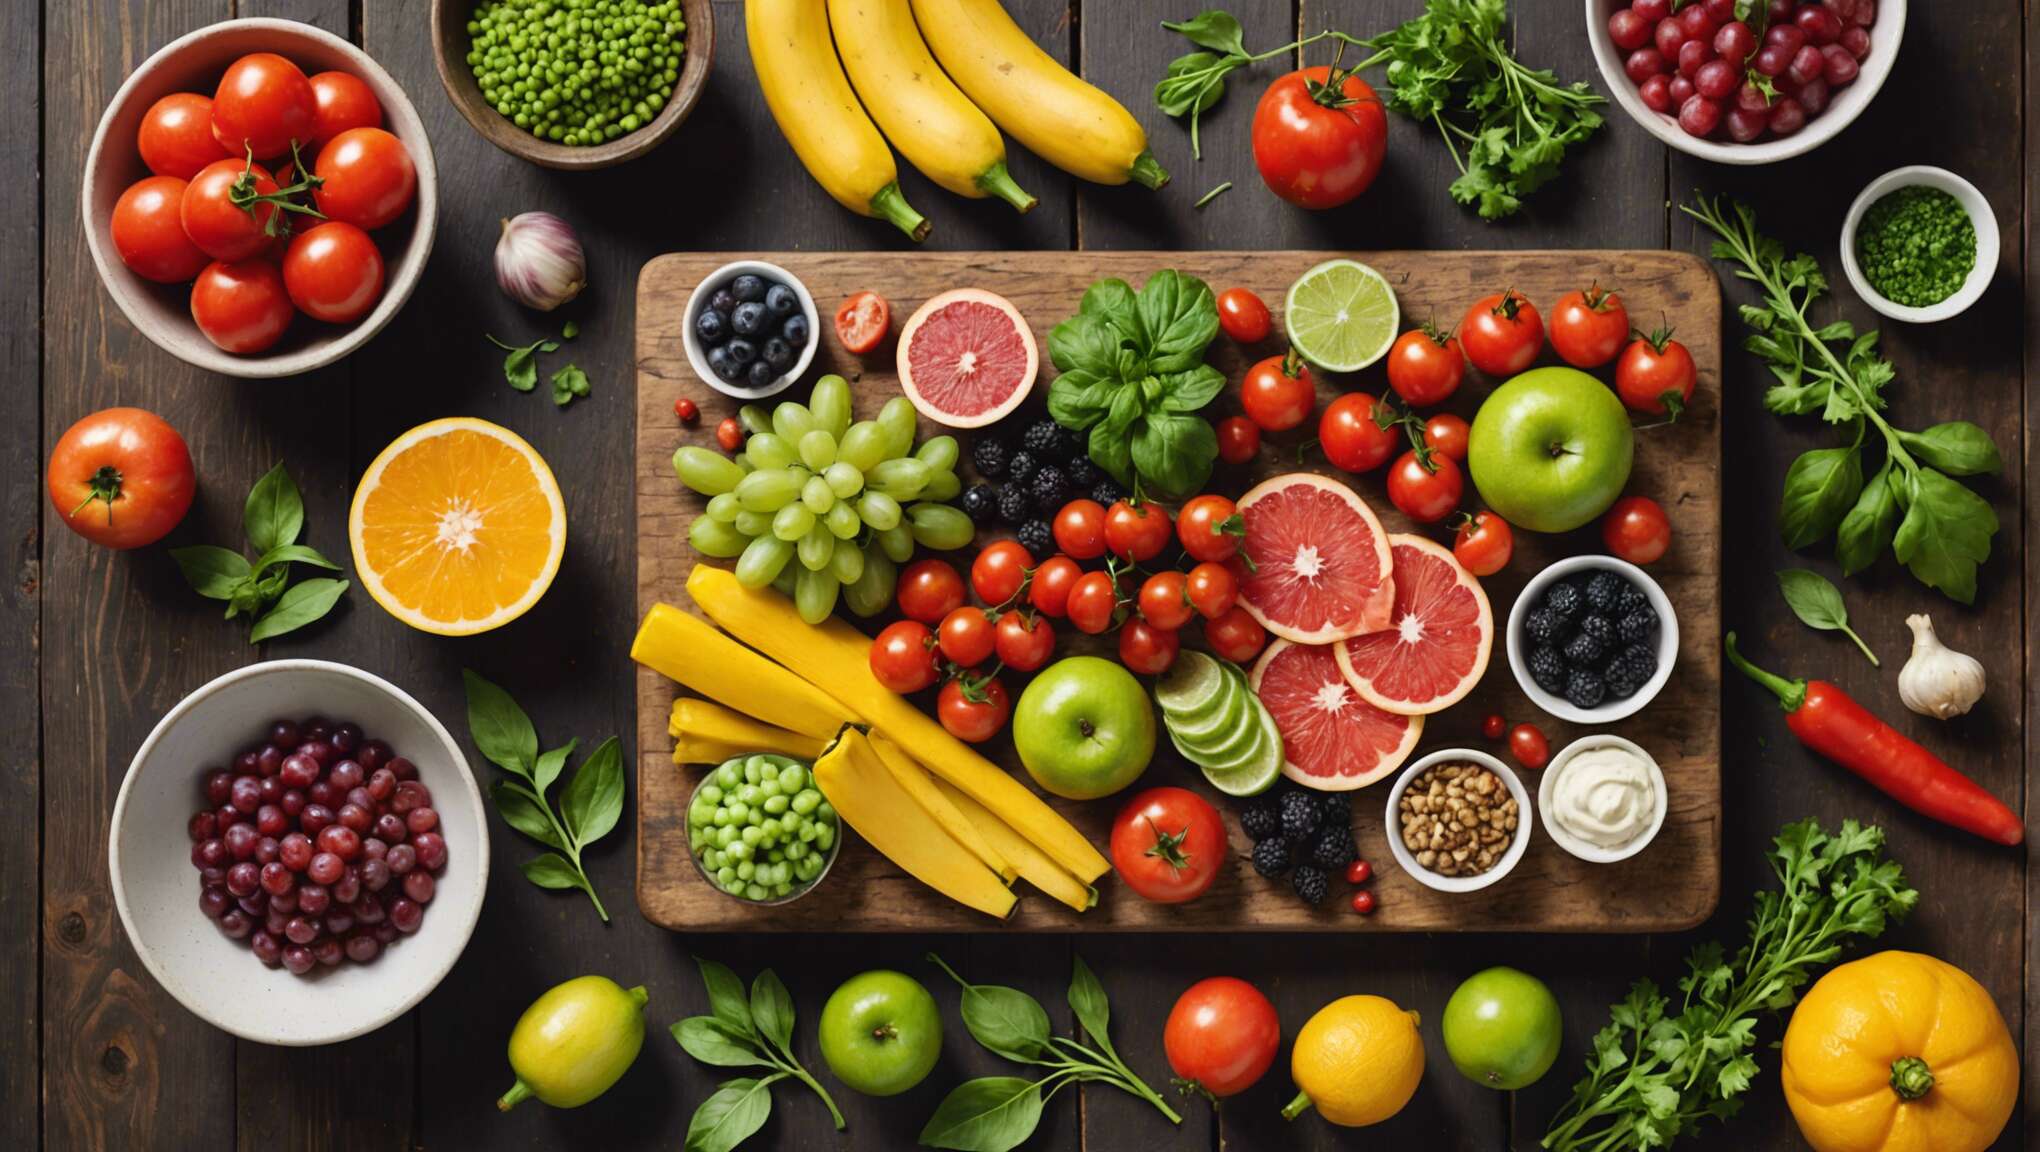 Recettes crues faciles : tartares de fruits et légumes à la découverte des saveurs